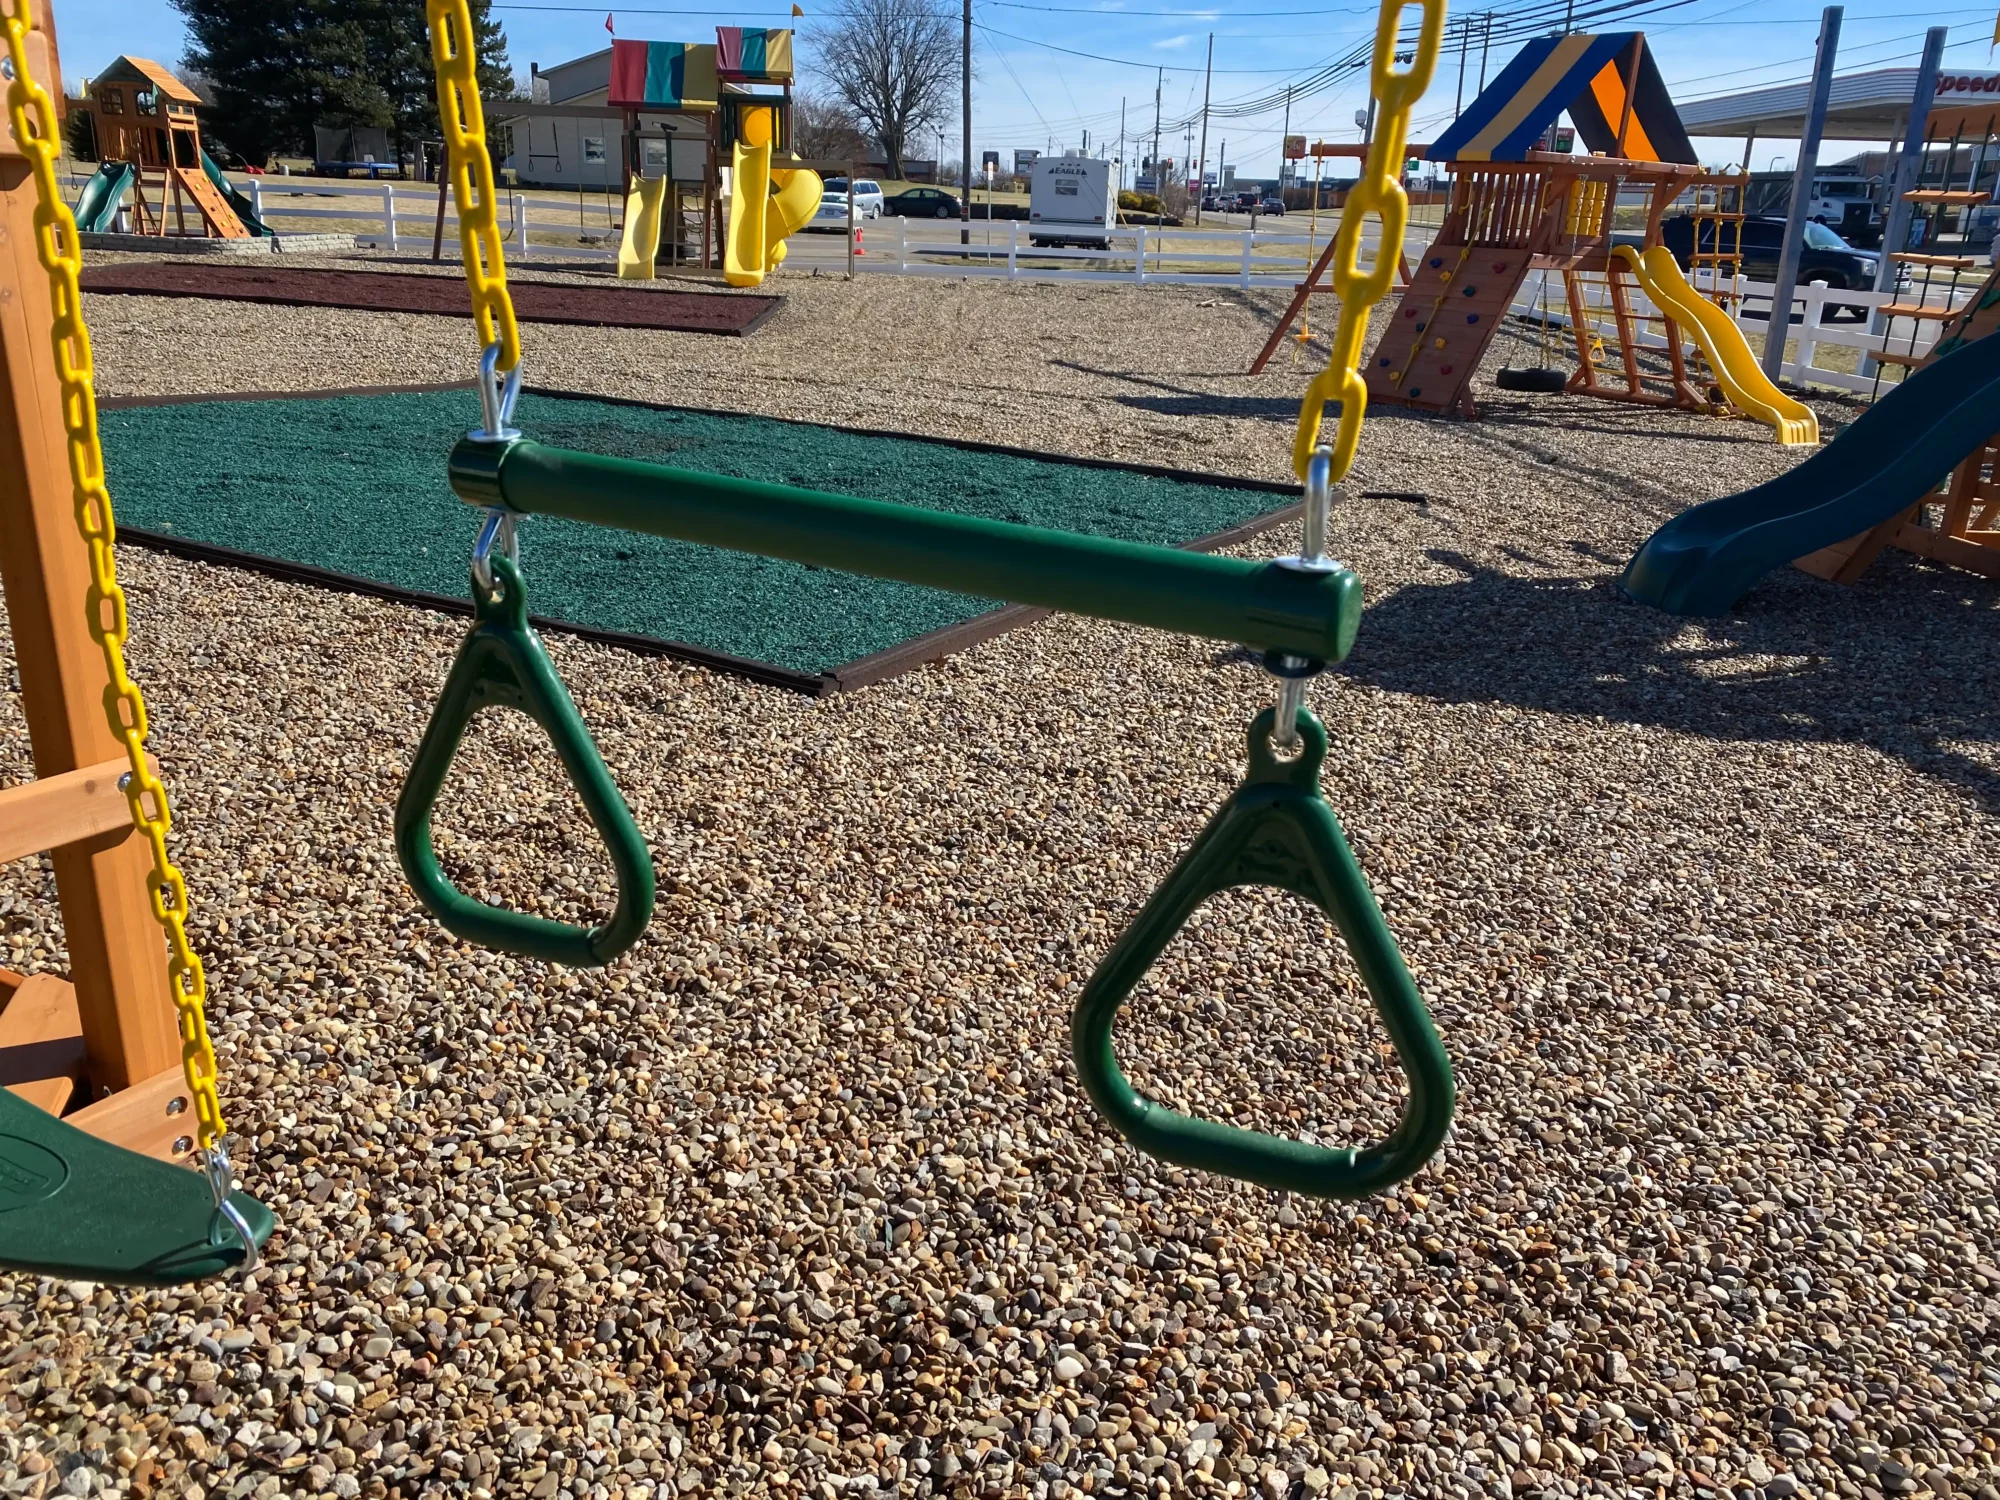 Playground Swing Set for Sale Mason Ohio